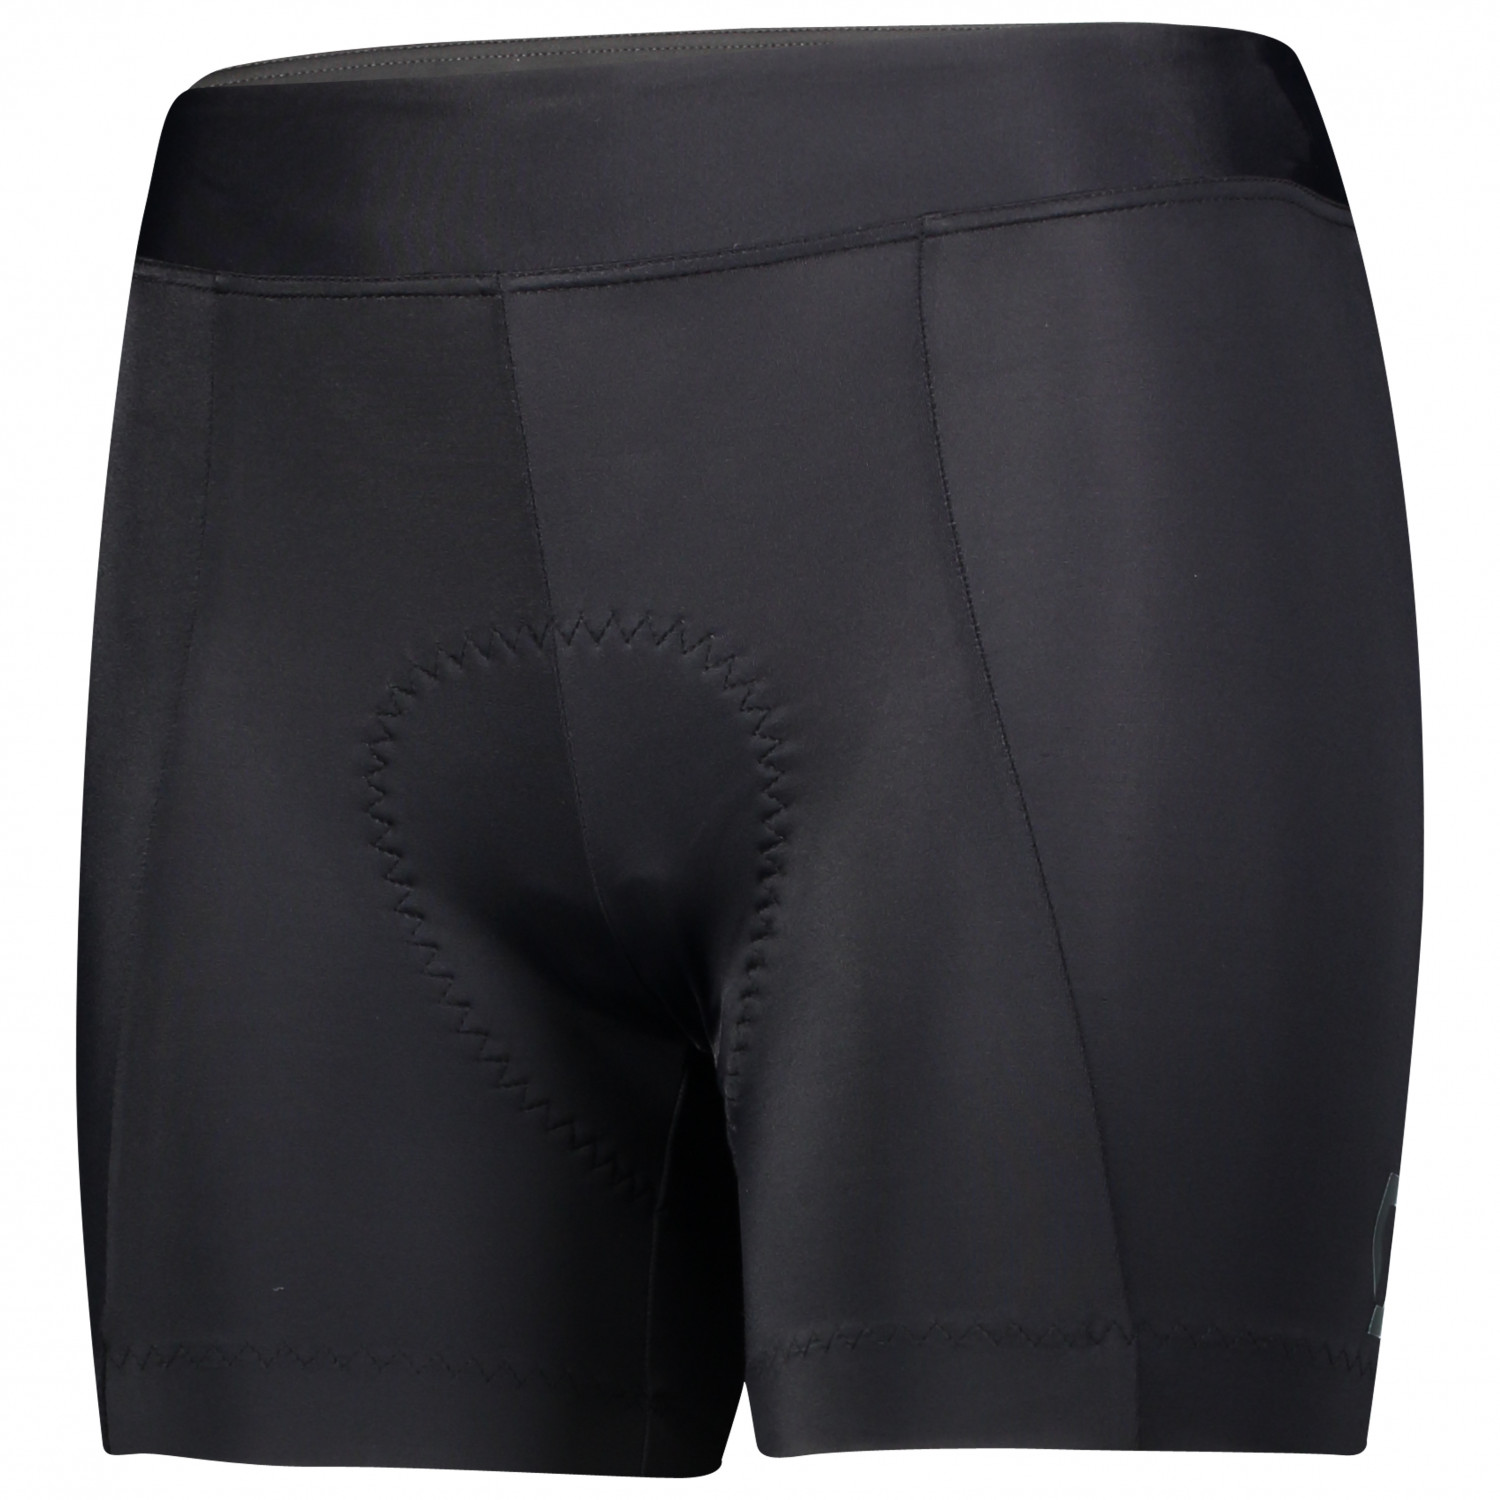 Велосипедные шорты Scott Women's Shorts Endurance 20 ++, цвет Black/Dark Grey держатель для горного велосипеда iiipro винт для горного велосипеда m5 18 мм с шайбой руль болт велосипедные детали